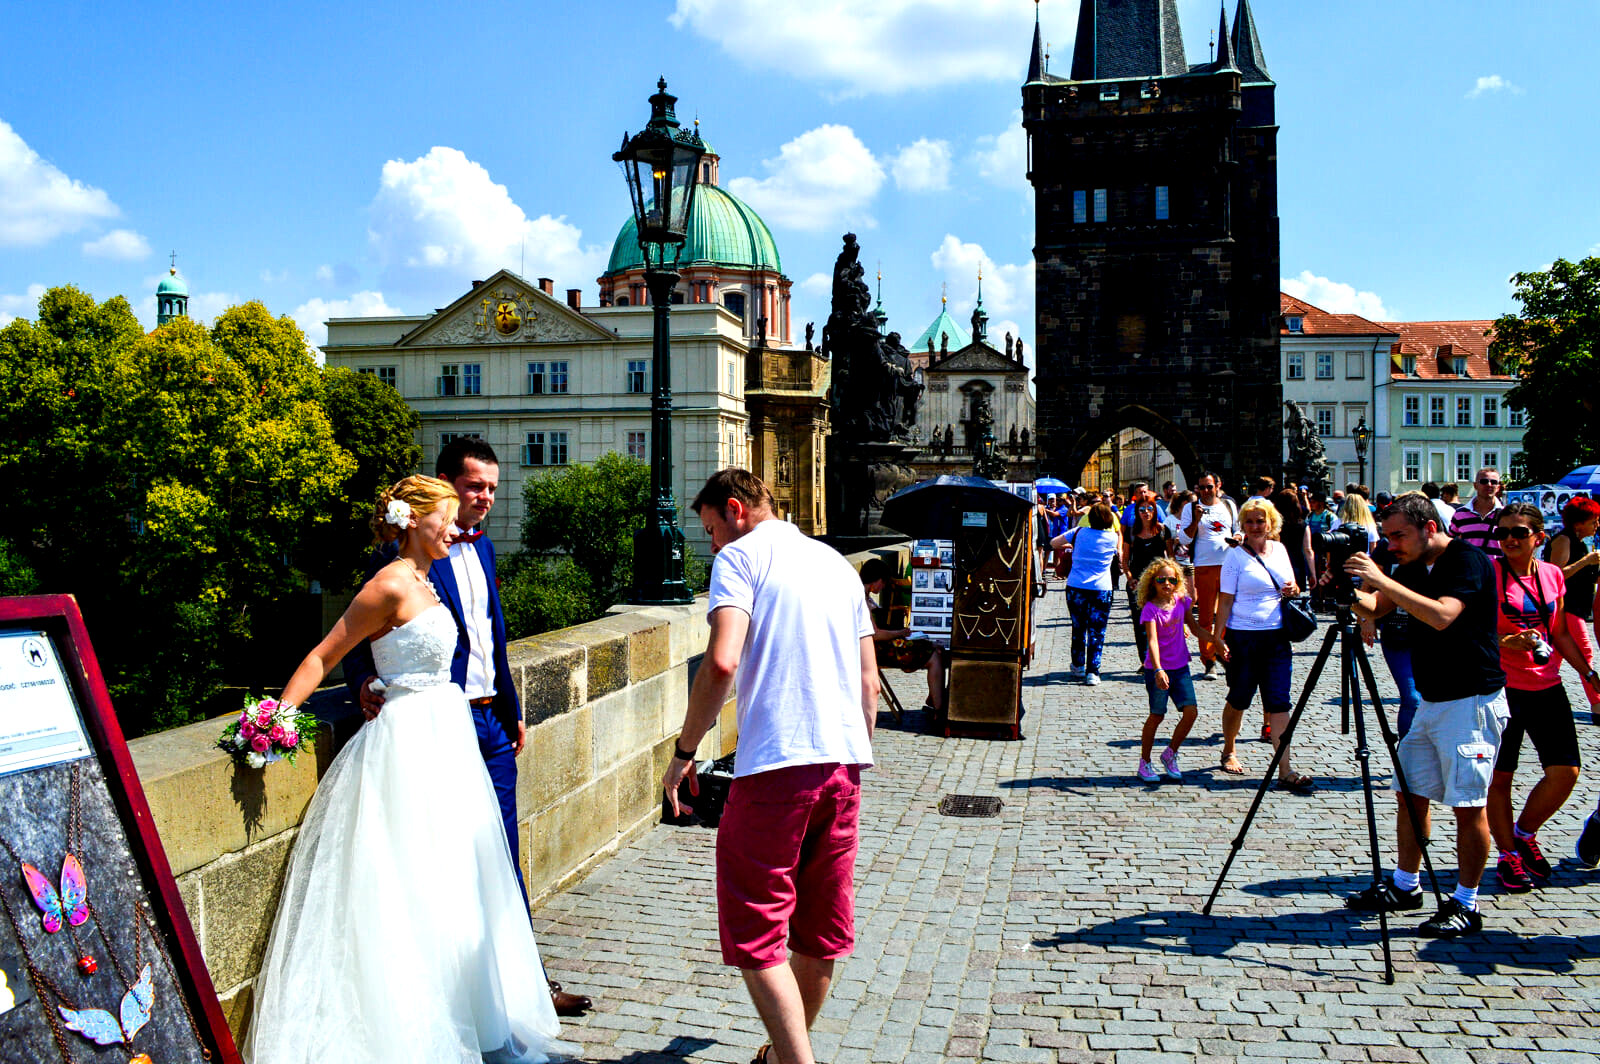 Наши сограждане часто выбирают Чехию для проведения свадьбы